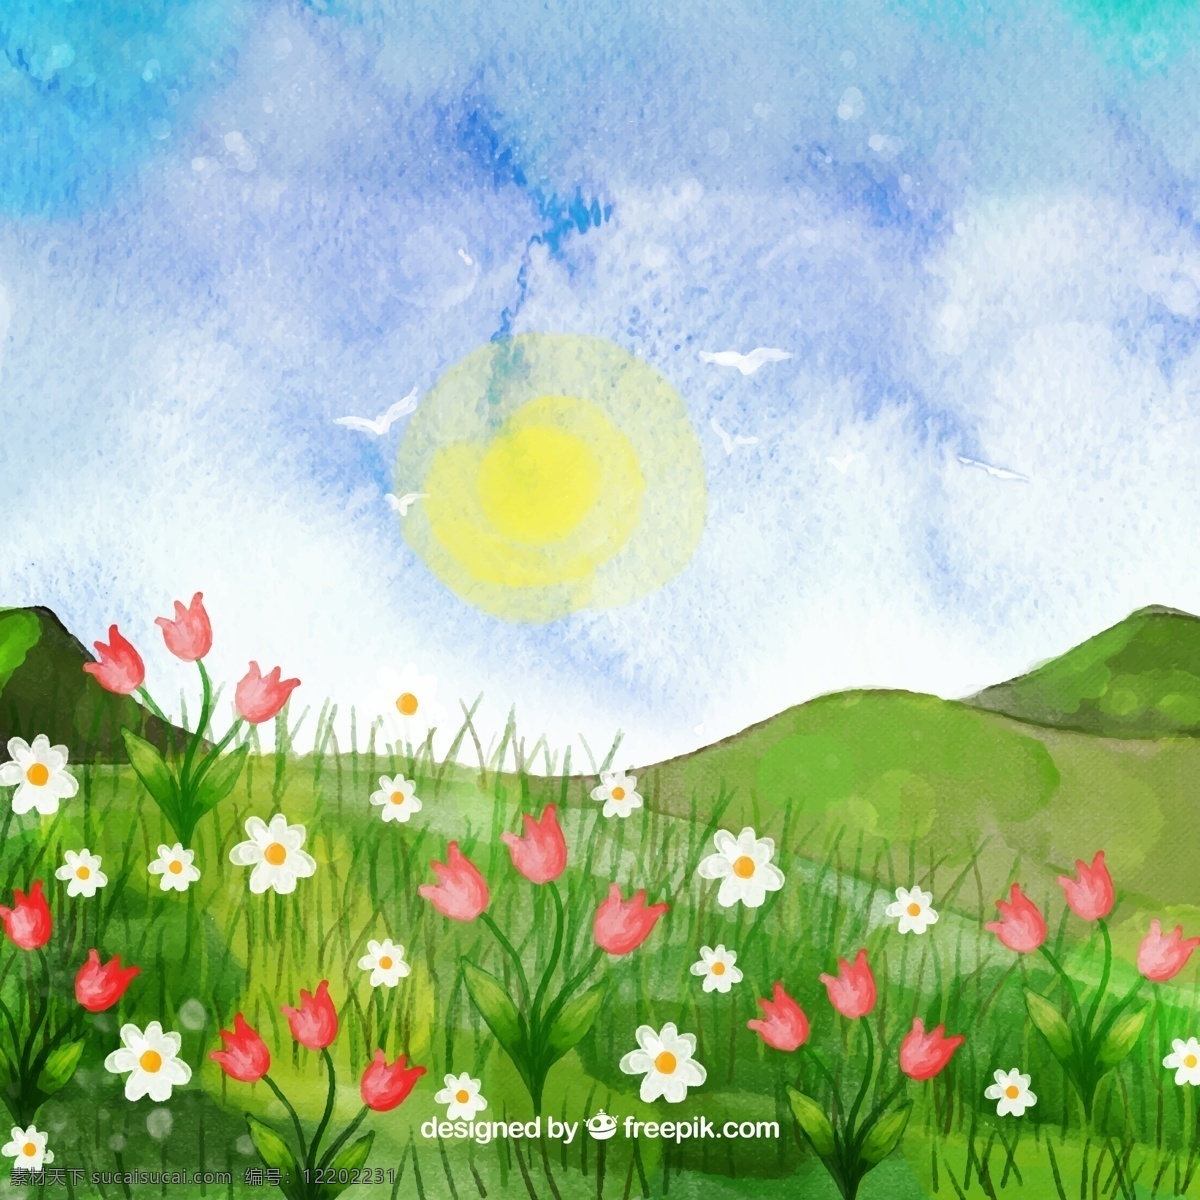 水彩 绘 郊外 野花 风景 矢量 草地 太阳 云朵 山花丛 水彩画路